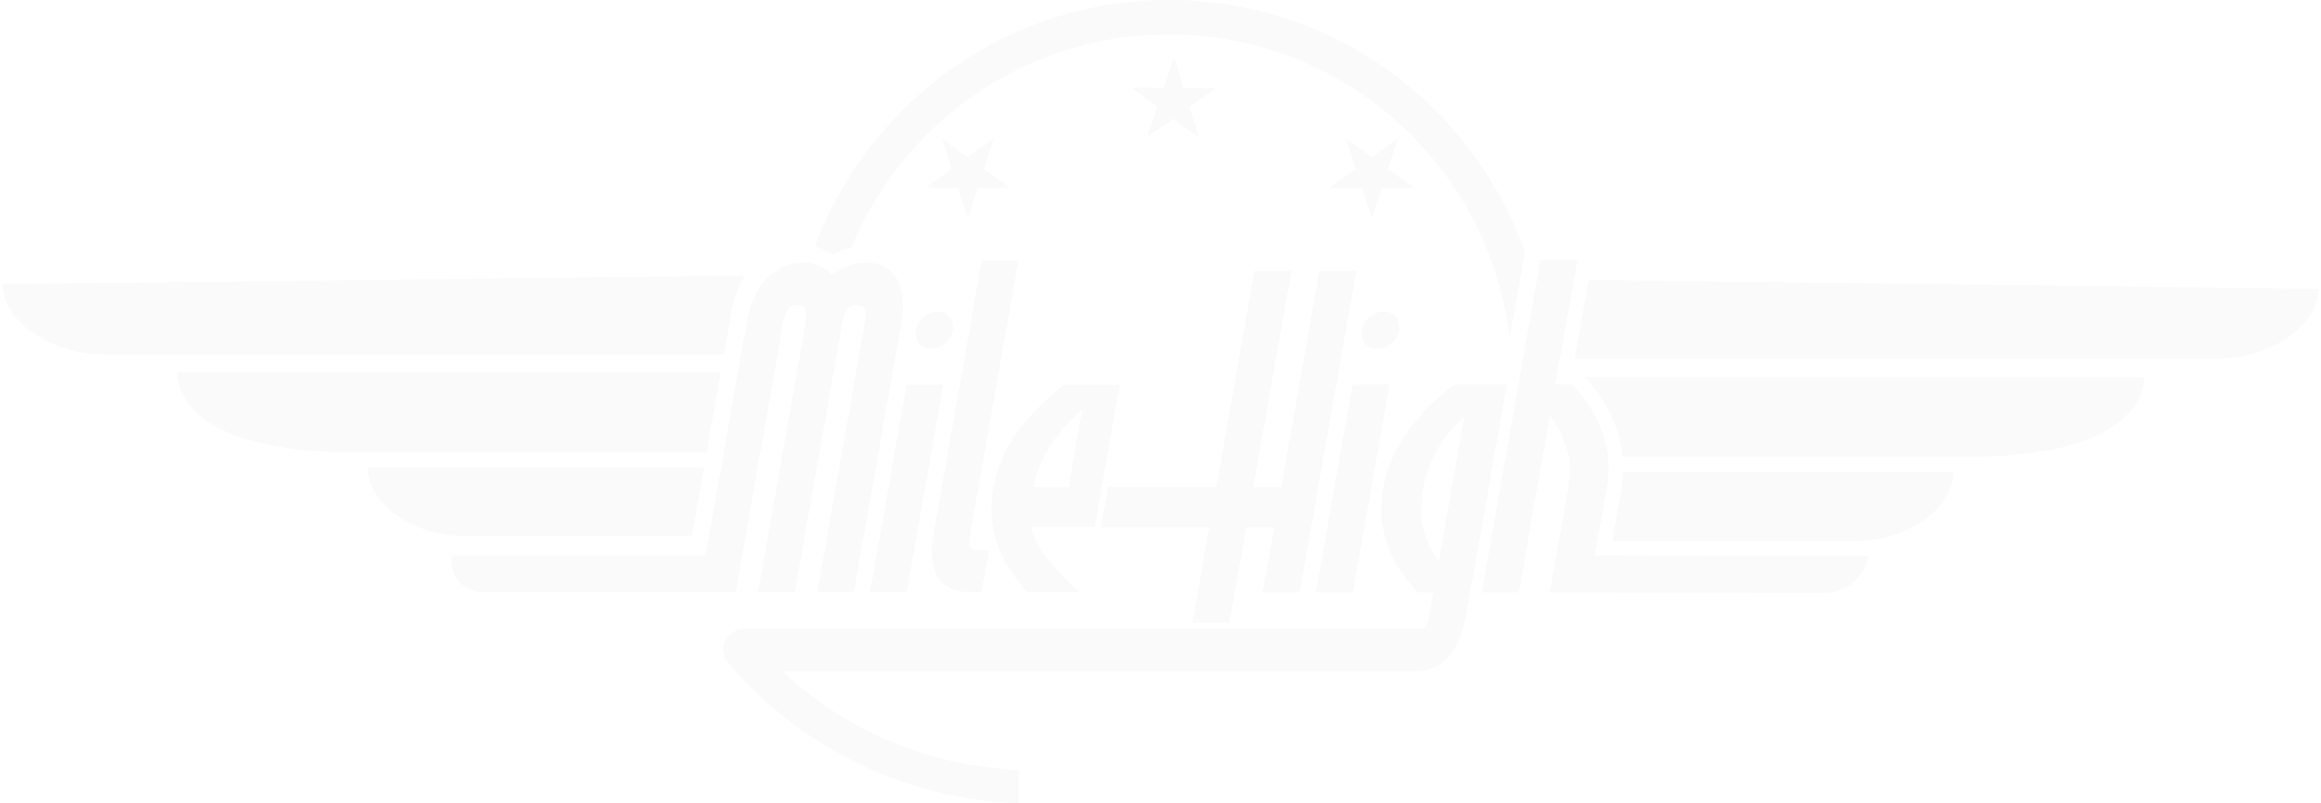 Mile high southampton logo